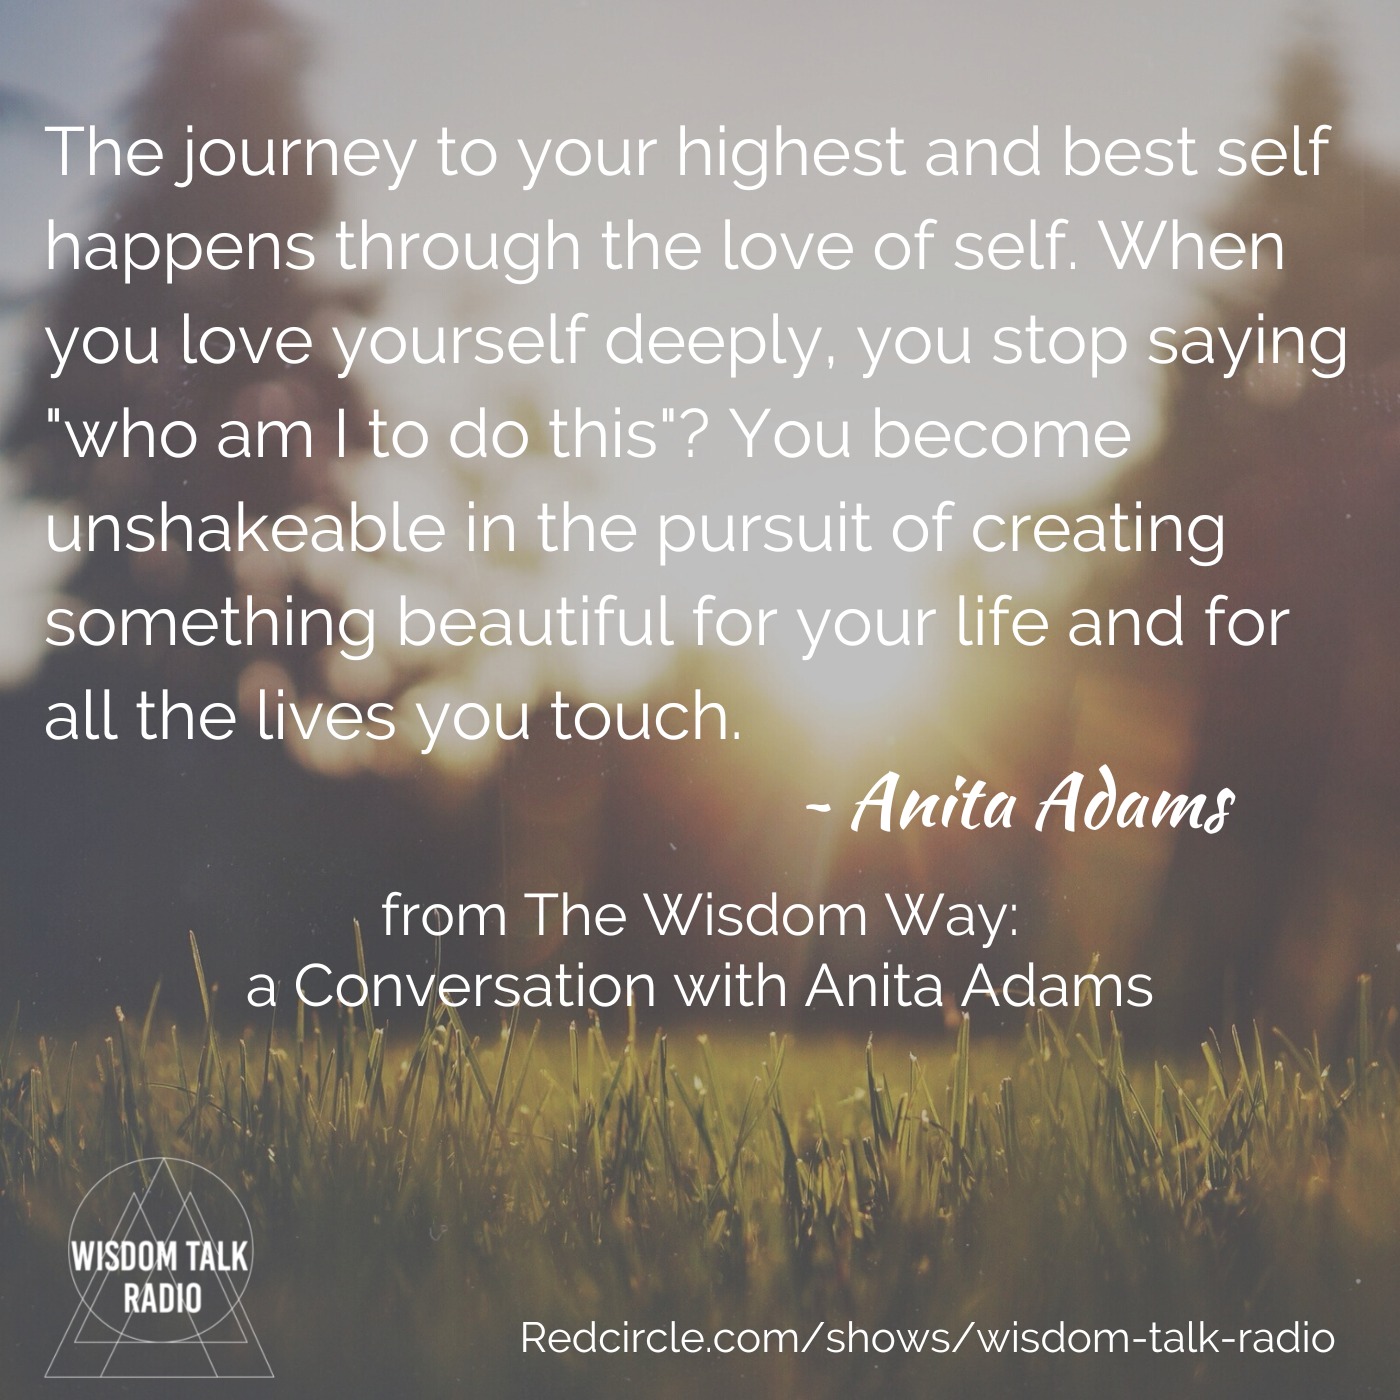 The Wisdom Way: a Conversation with Anita Adams